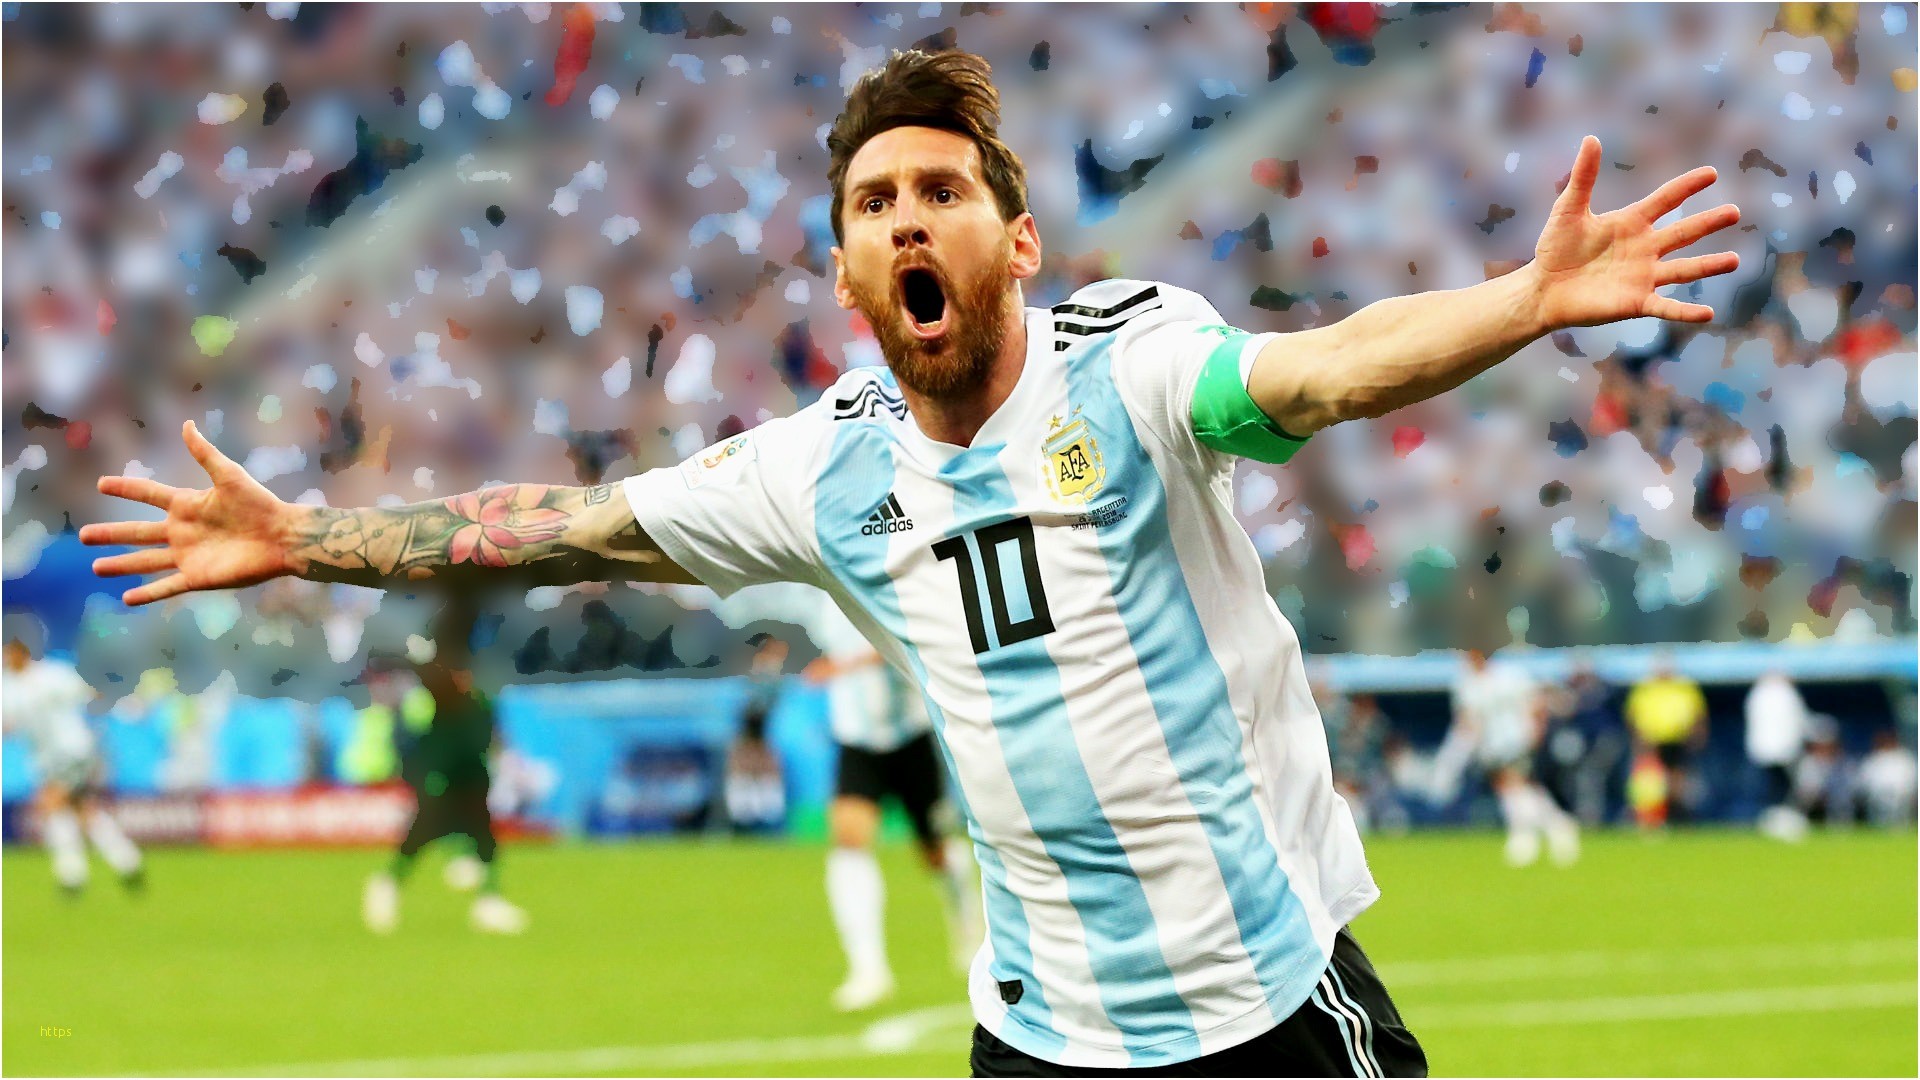 1920x1080 Lionel Messi Wallpaper Luxury top Best 35 Lionel Messi Wallpaper Photos Hd  2018